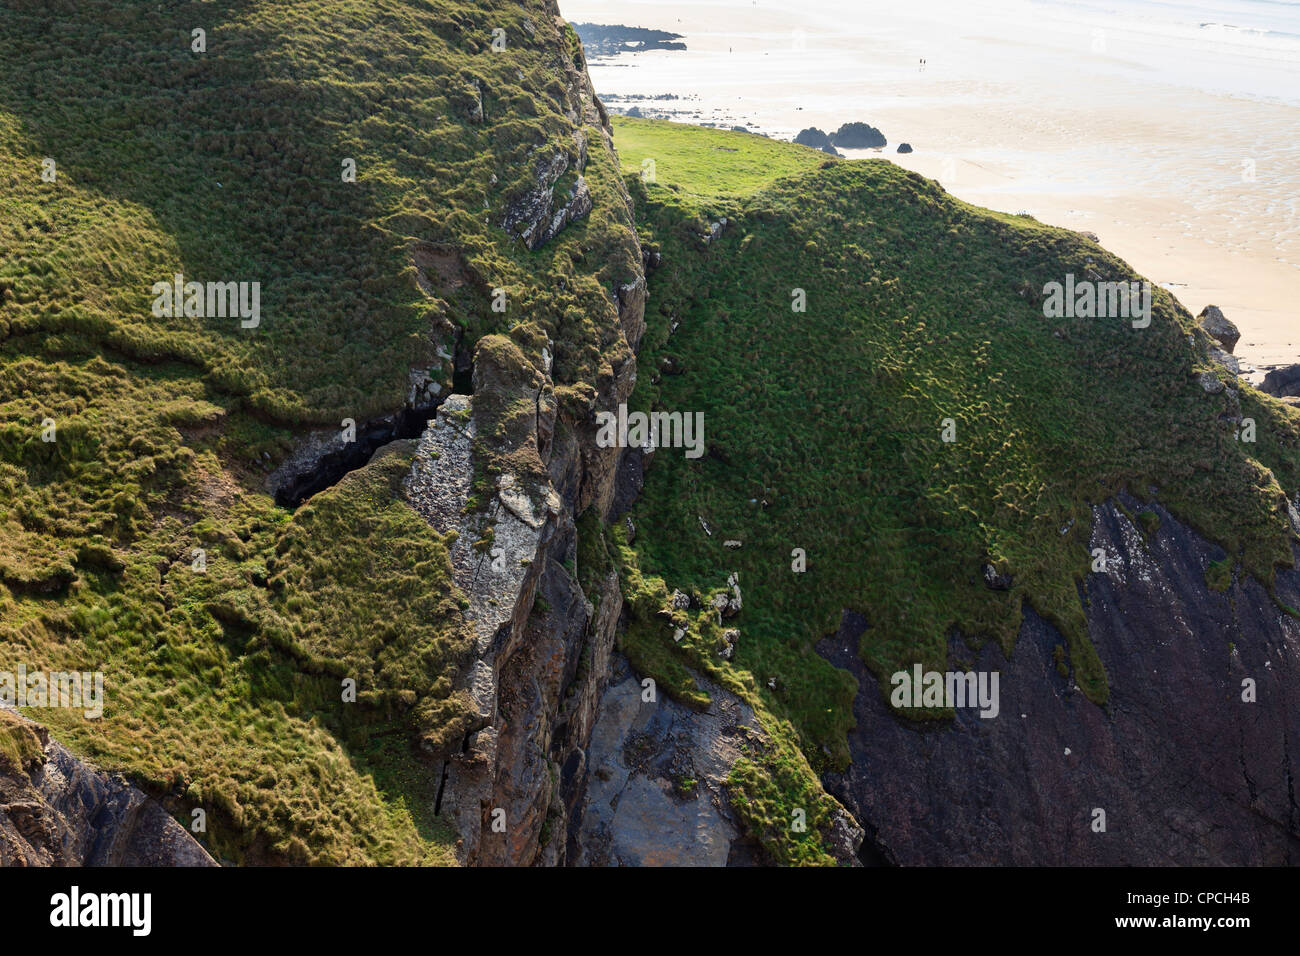 Felsen, knacken und brechen weg von den erodierenden Klippen oberhalb des Strandes bei Bude, Cornwall, England, UK, Großbritannien Stockfoto